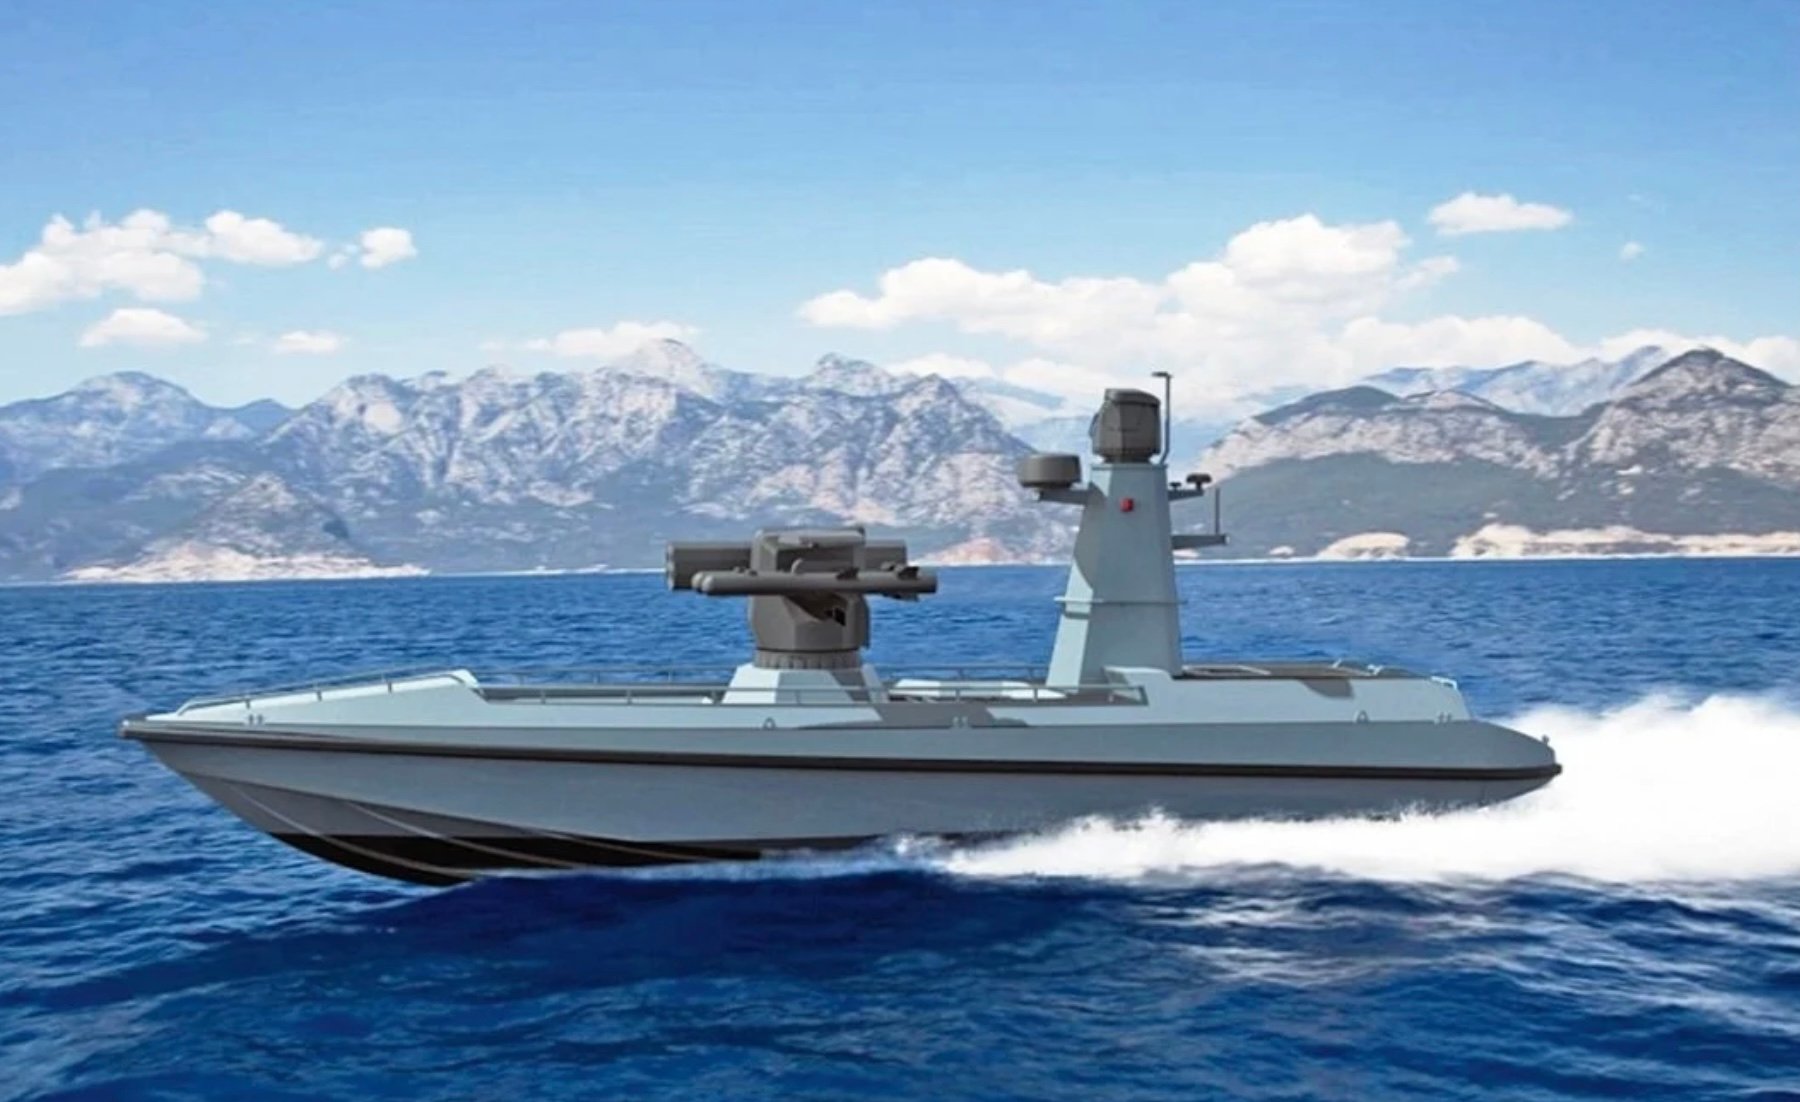 Η Τουρκία γεμίζει το Αιγαίο με οπλισμένα μη επανδρωμένα πλοία και ευελπιστεί μαζί με τα εναέρια UAVs να αλλάξει την ισορροπία δυνάμεων